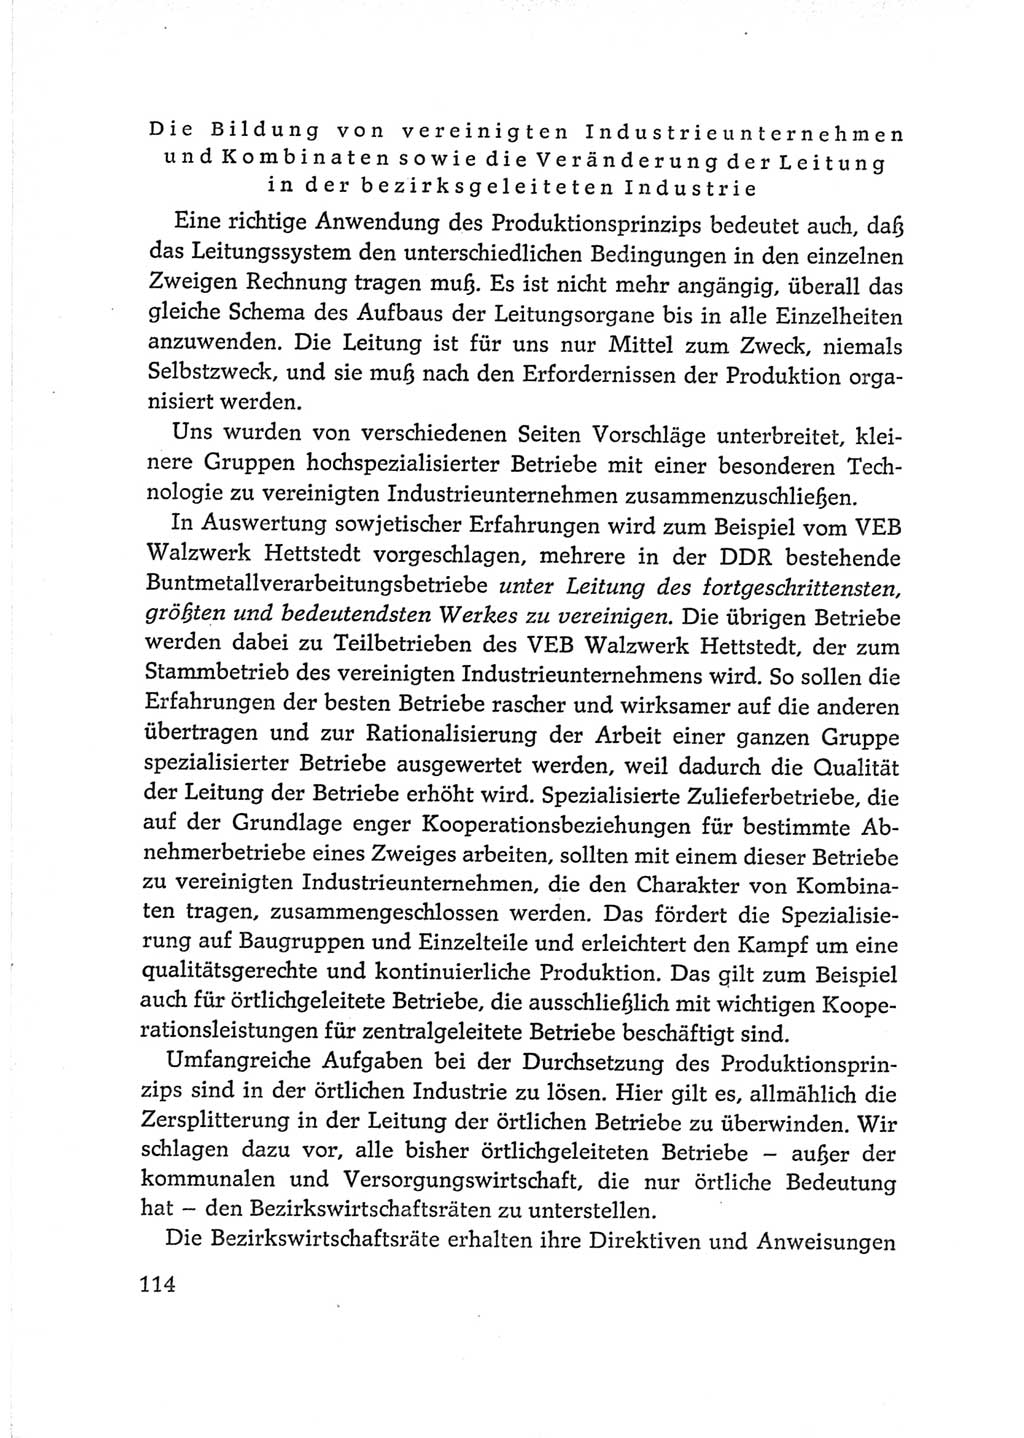 Protokoll der Verhandlungen des Ⅵ. Parteitages der Sozialistischen Einheitspartei Deutschlands (SED) [Deutsche Demokratische Republik (DDR)] 1963, Band Ⅰ, Seite 114 (Prot. Verh. Ⅵ. PT SED DDR 1963, Bd. Ⅰ, S. 114)